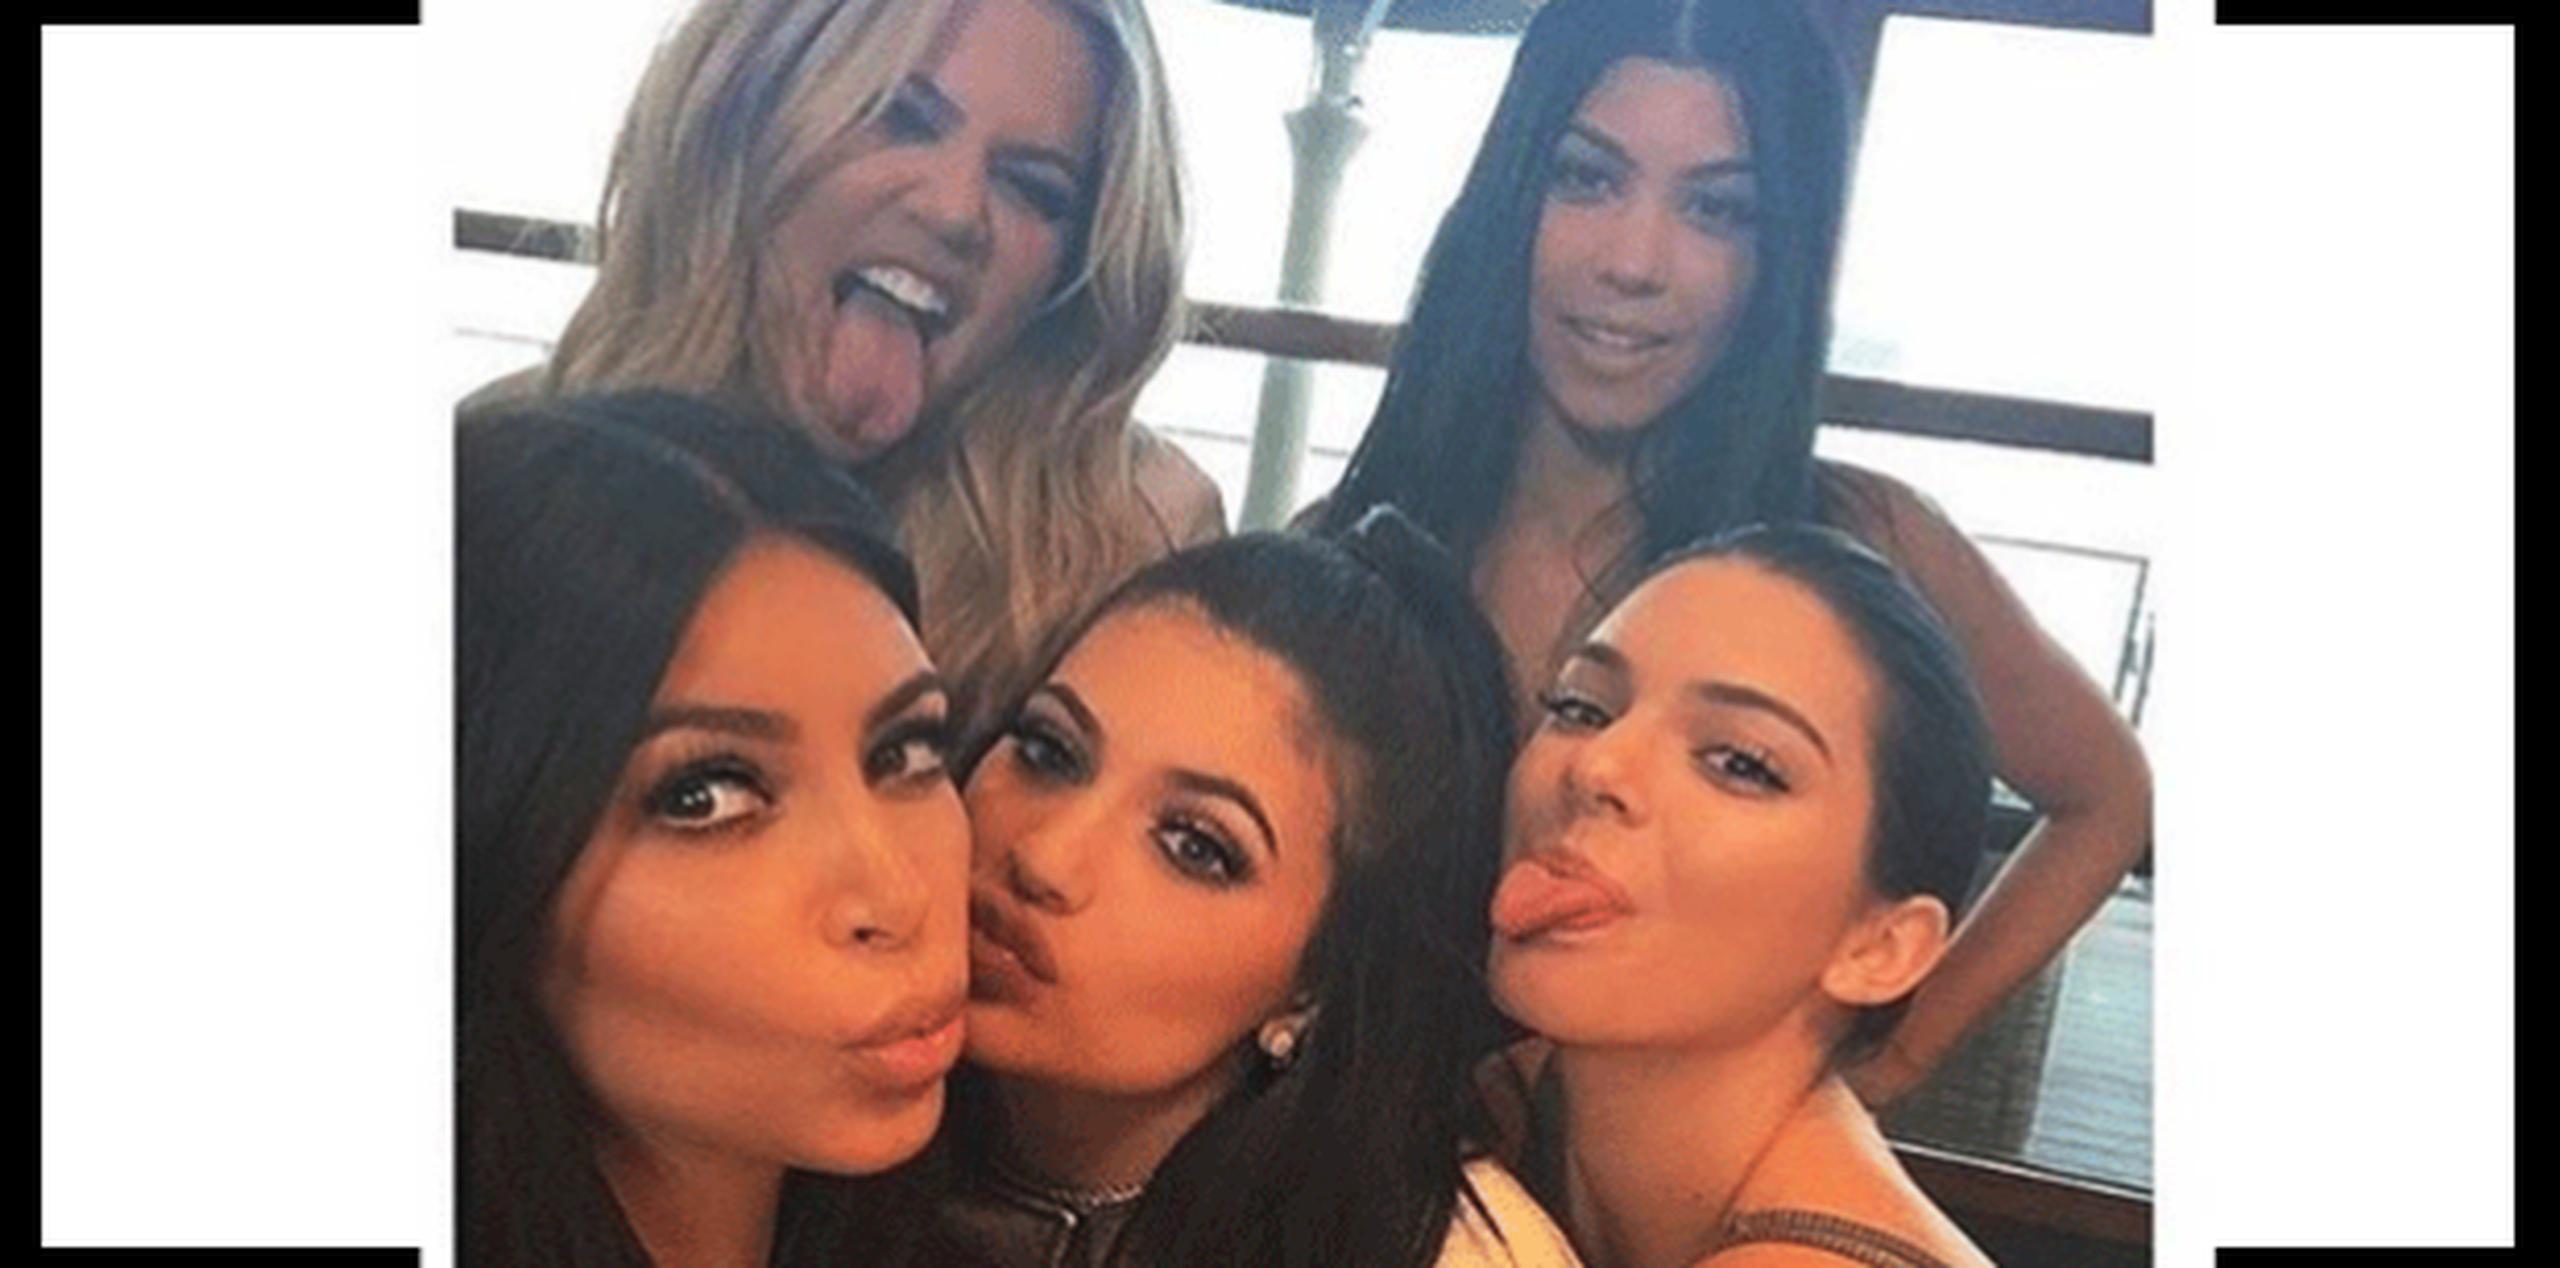 Las socialité de las Kardashian son conocidas por sus prominentes curvas, sus polémicas vidas y sus múltiples seguidores en las redes sociales. (Instagram)